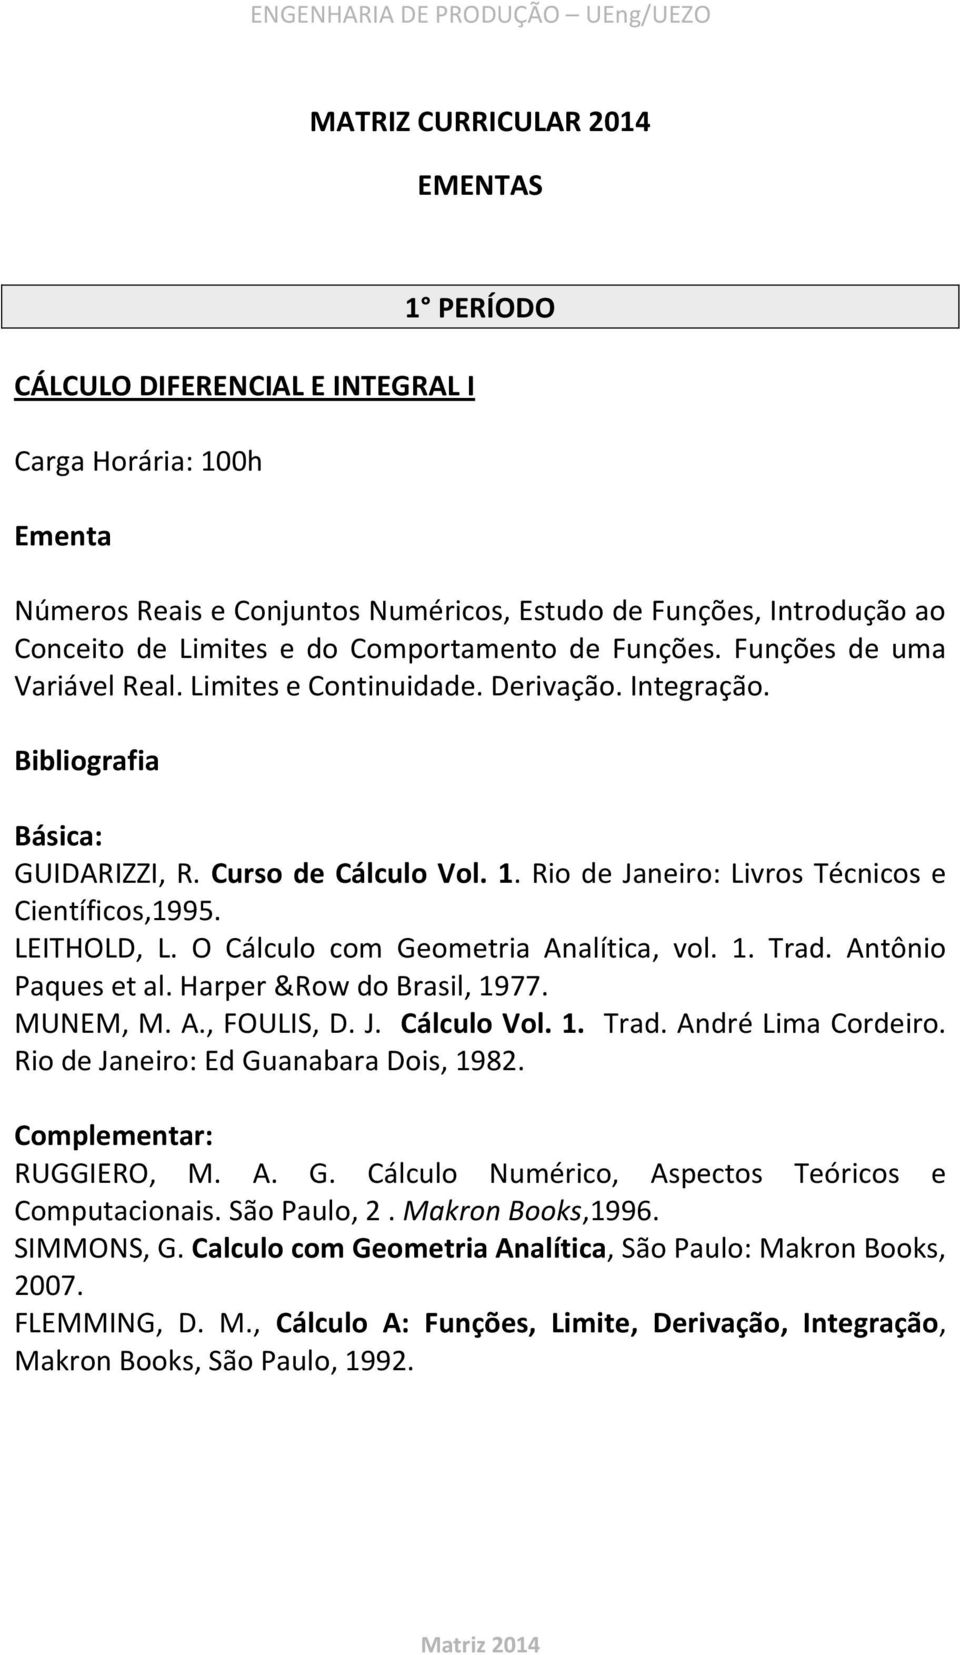 LEITHOLD, L. O Cálculo com Geometria Analítica, vol. 1. Trad. Antônio Paques et al. Harper &Row do Brasil, 1977. MUNEM, M. A., FOULIS, D. J. Cálculo Vol. 1. Trad. André Lima Cordeiro.